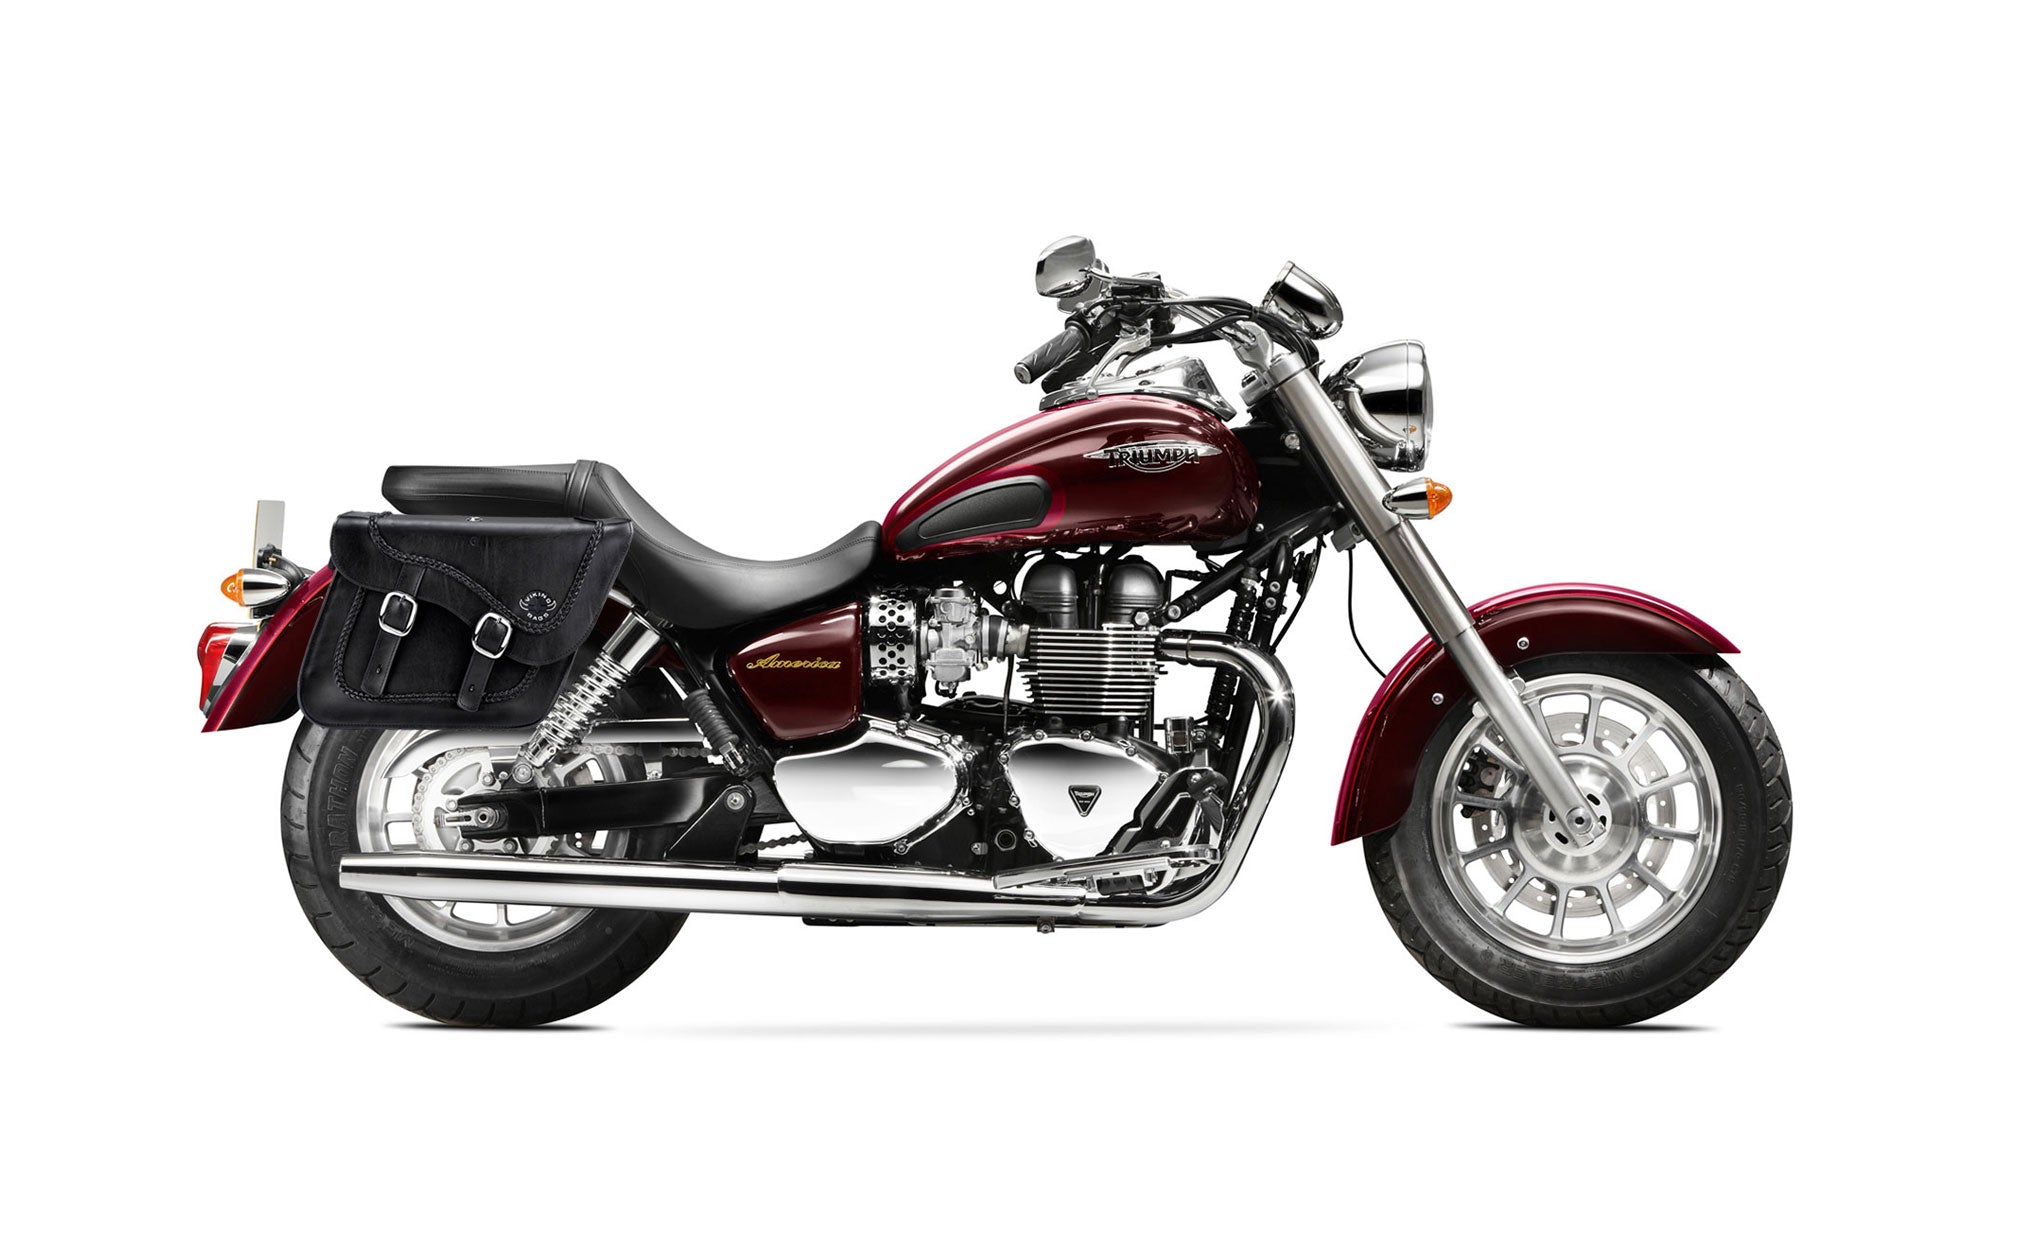 Viking Americano Triumph America Braided Large Leather Motorcycle Saddlebags on Bike Photo @expand